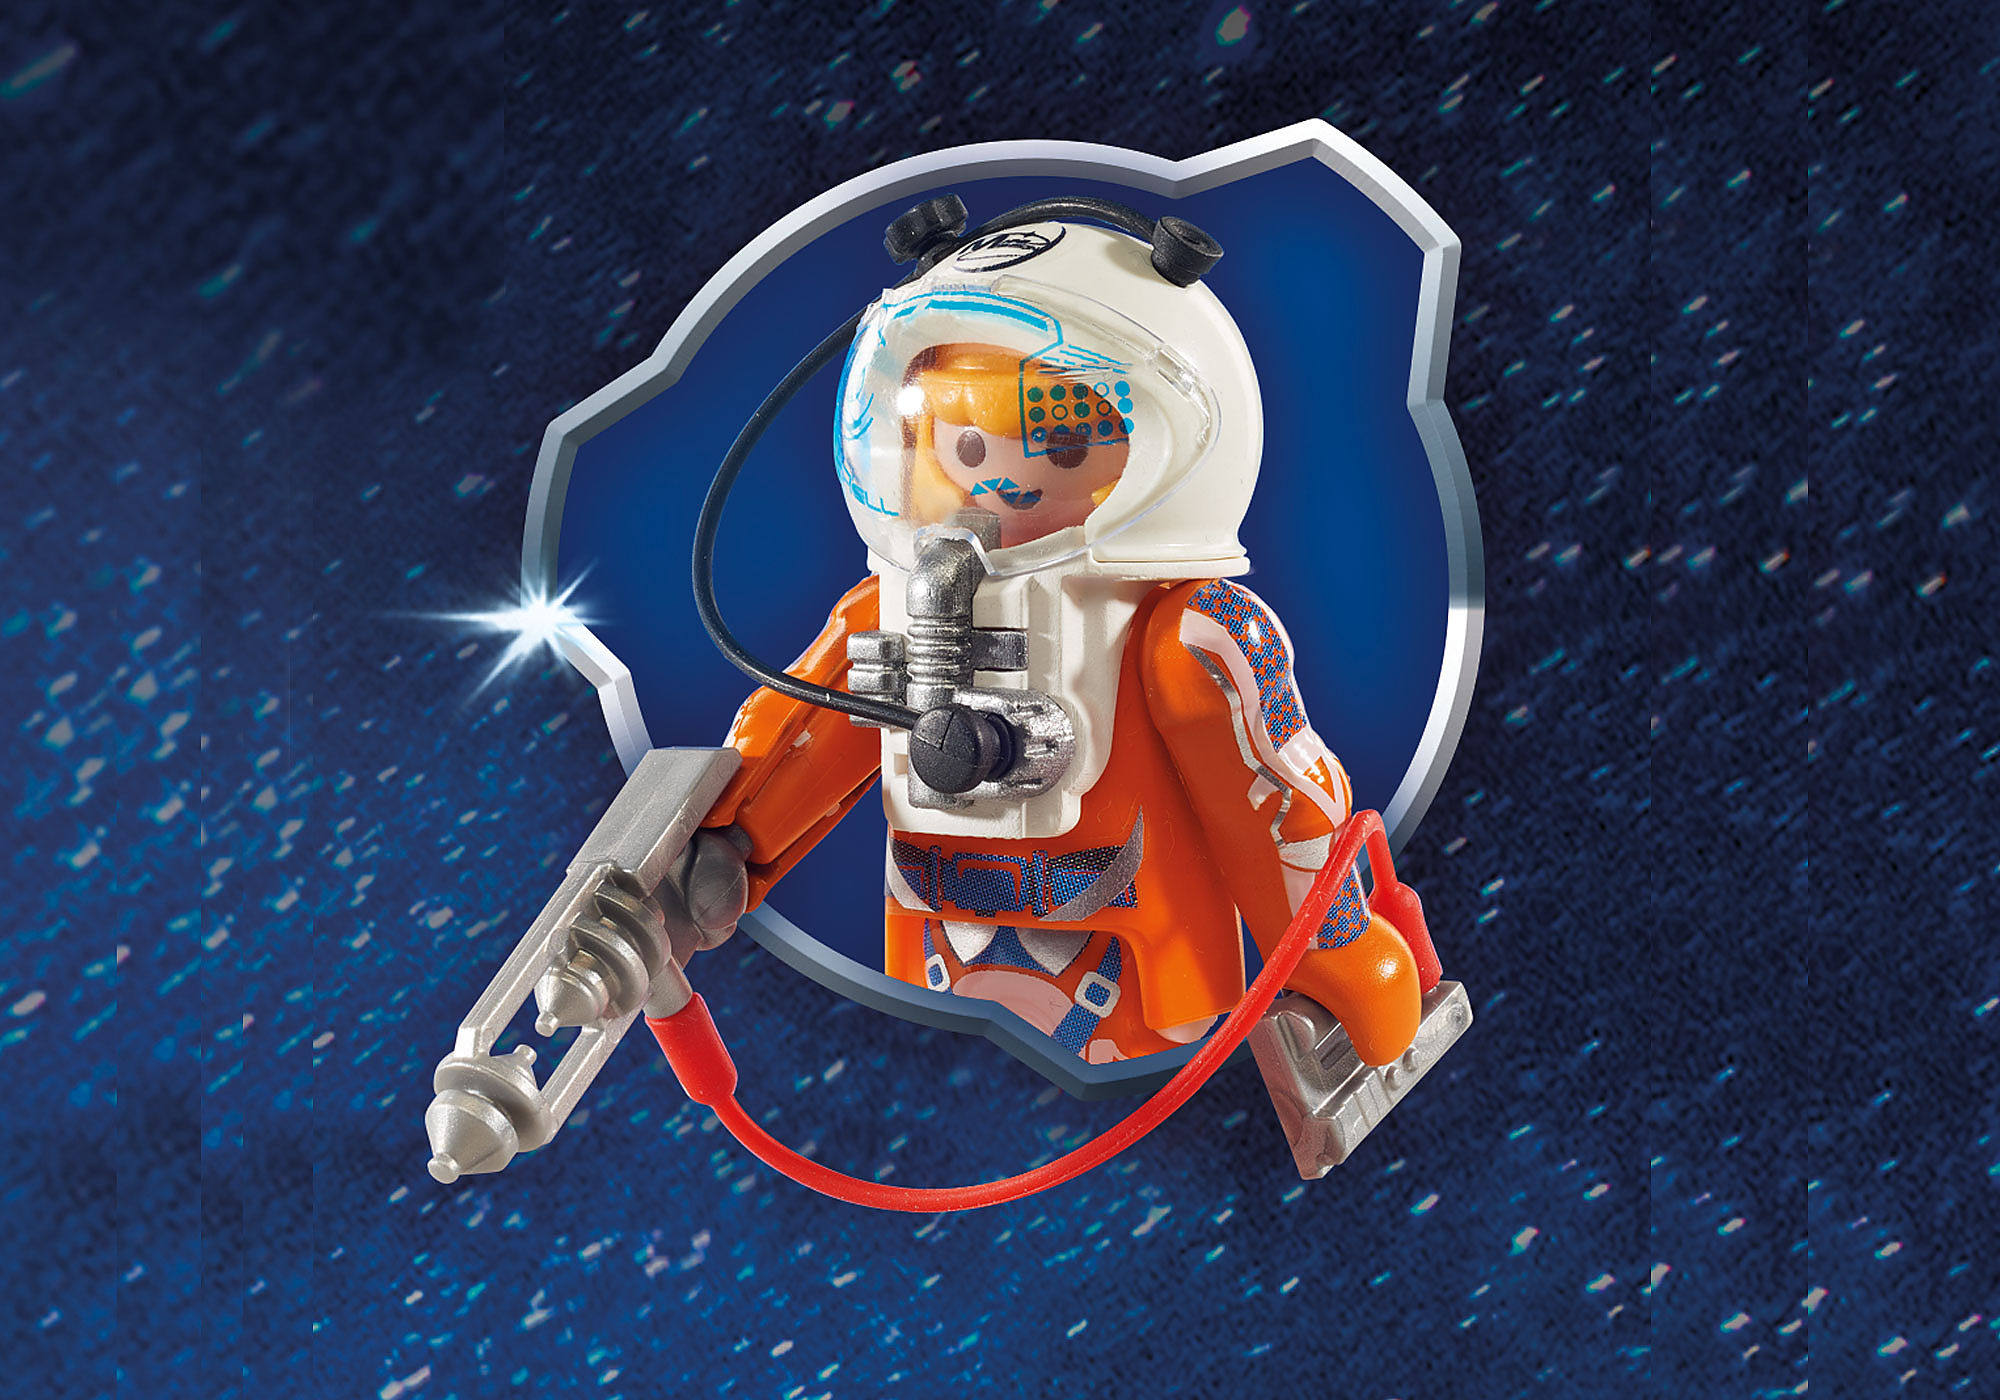 Fusée Playmobil et son satellite, le cadeau spatial pour enfant !